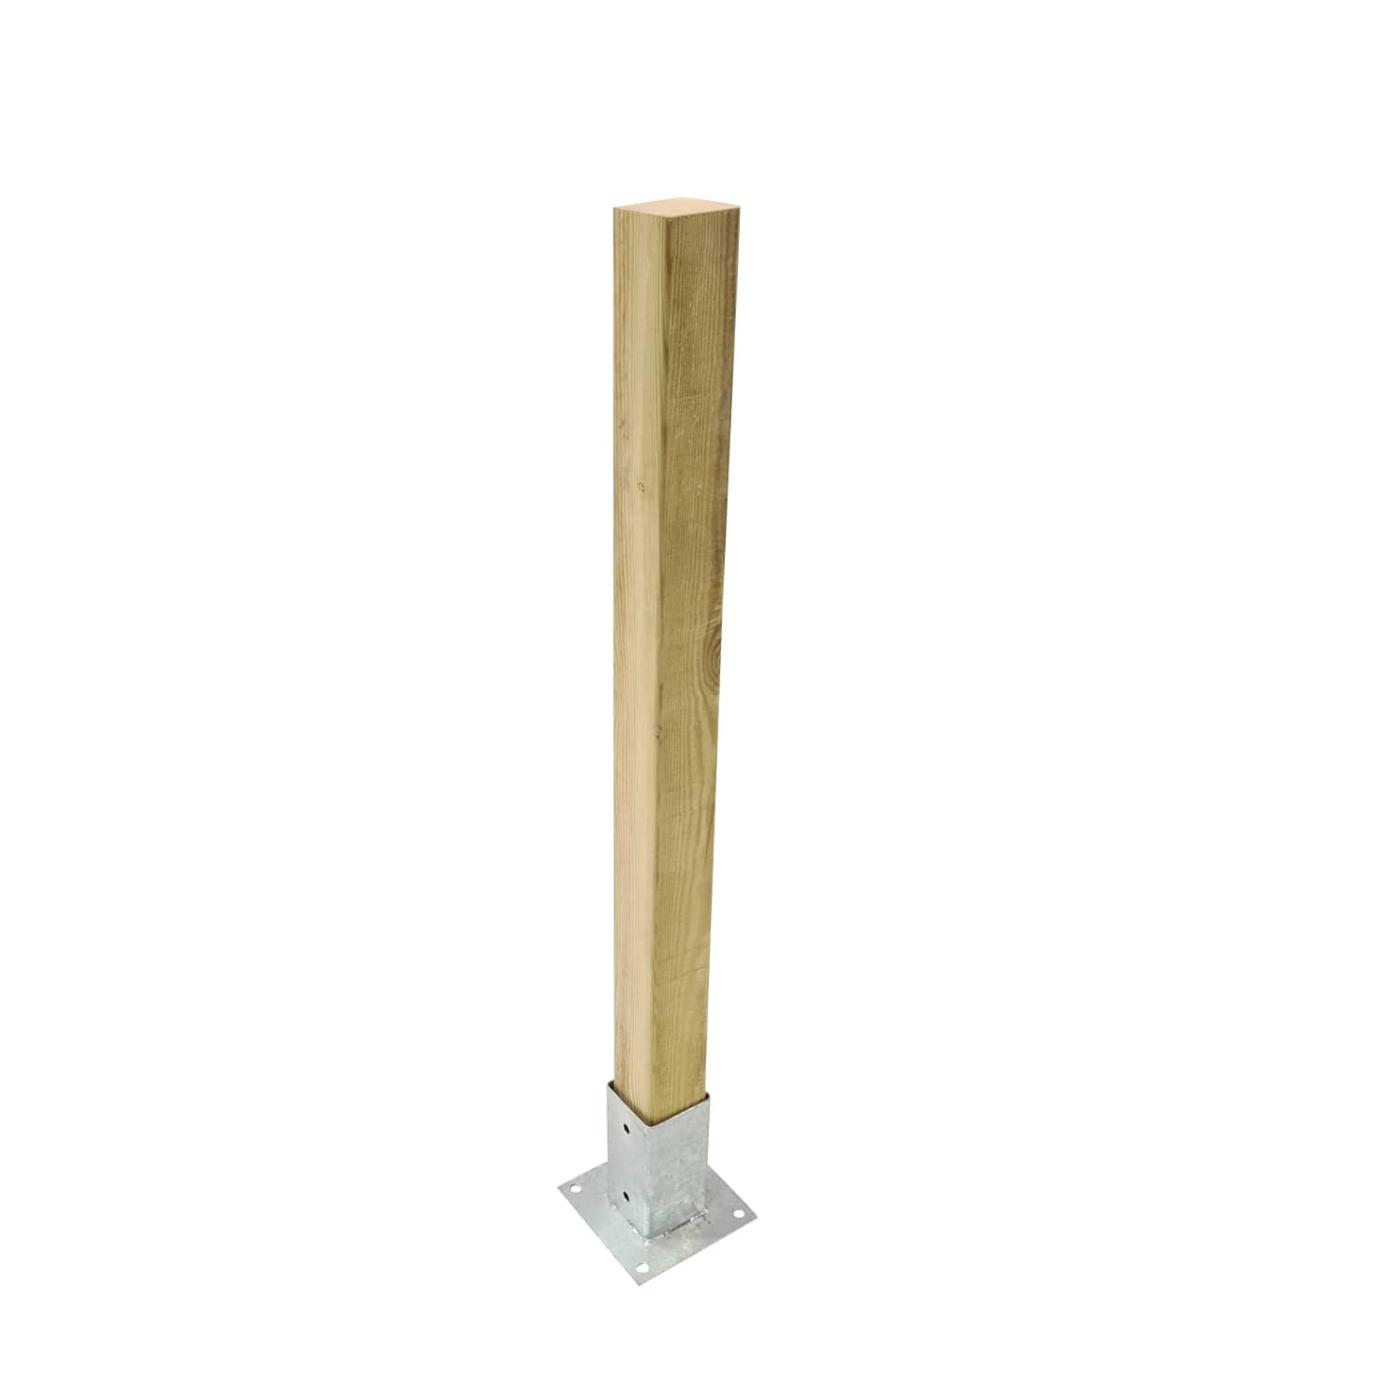 Pilar de madeira 68x68mm para vedações exteriores aprovadas MASGAMES